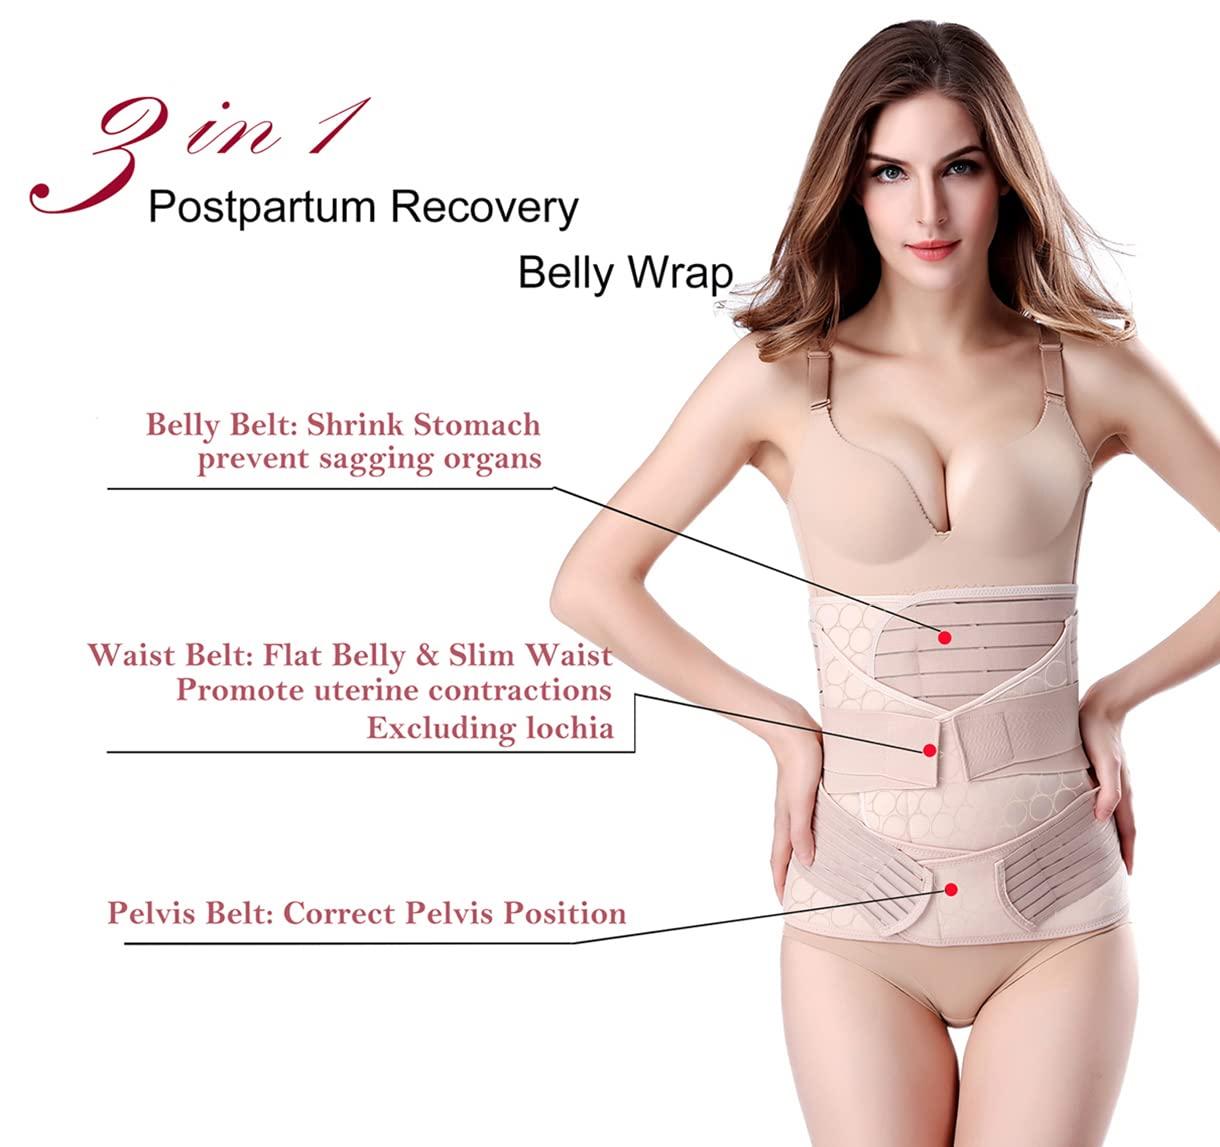 SAYFUT Women's 3 in 1 Best Postpartum Girdle Support Recovery Belly/Waist/Pelvis  Belt Shapewear 